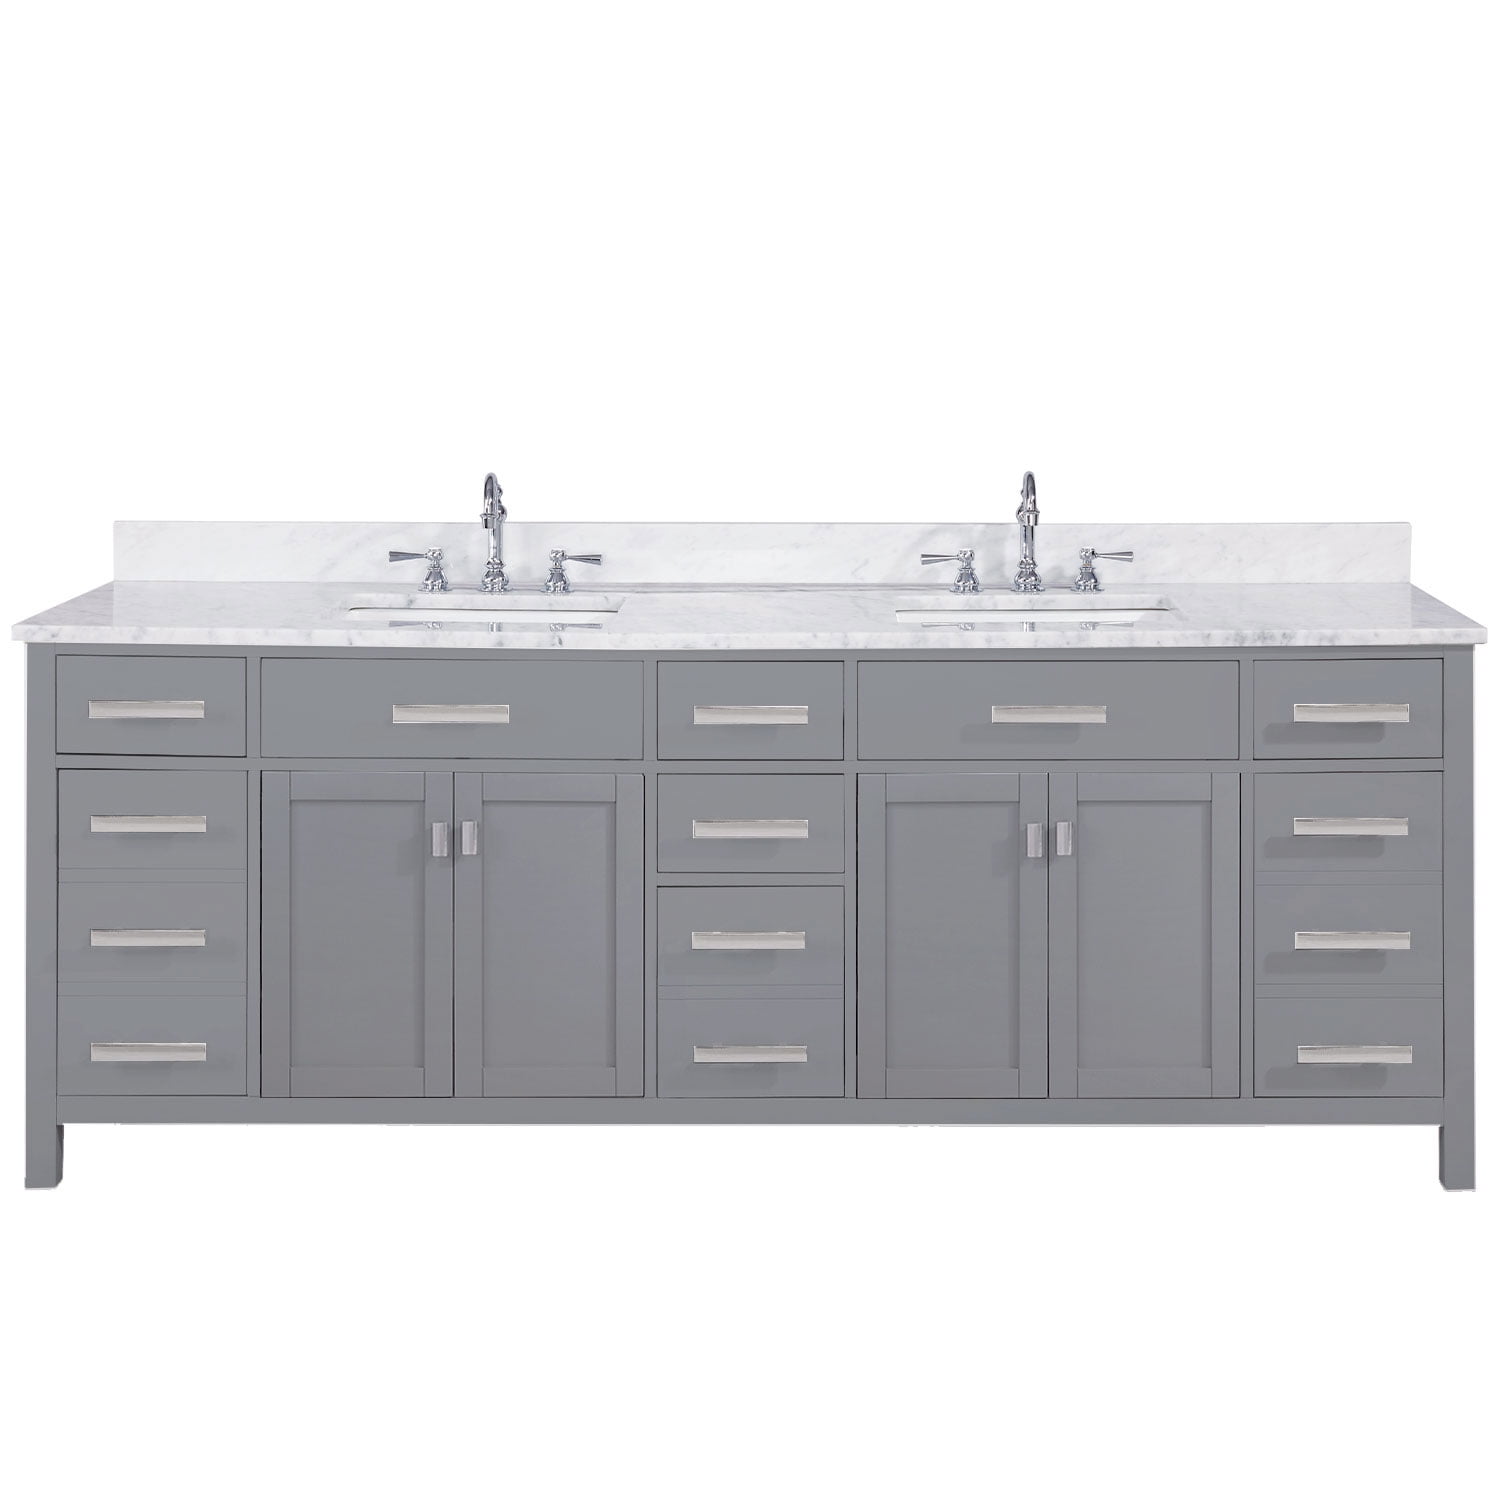 Double Sink Vanity In Gray, 84 Inch Vanity Cabinet